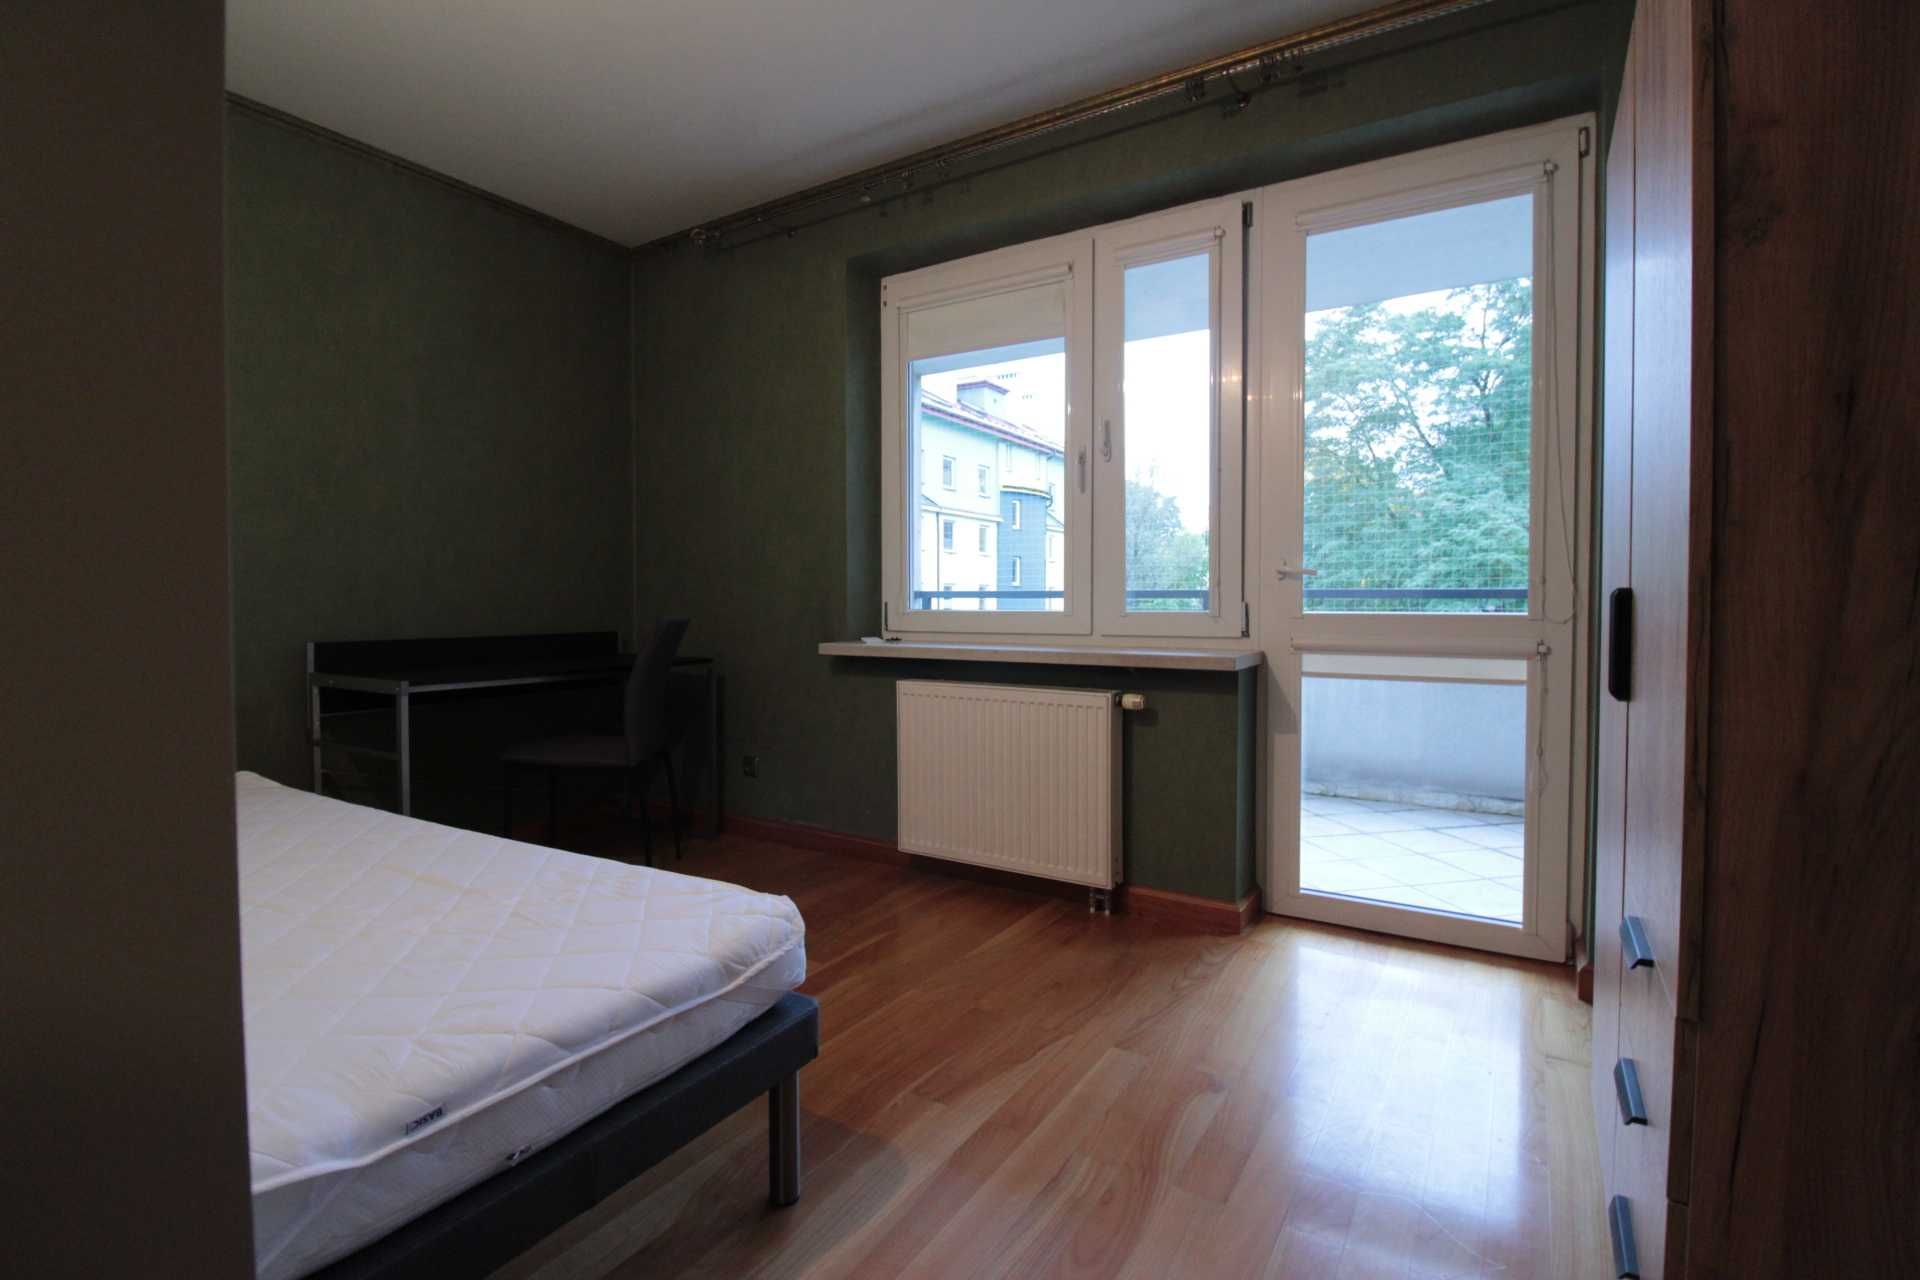 Pokój 12 m2 z balkonem ul. Rydla- Bronowice od 01.05, 1500 zł całość